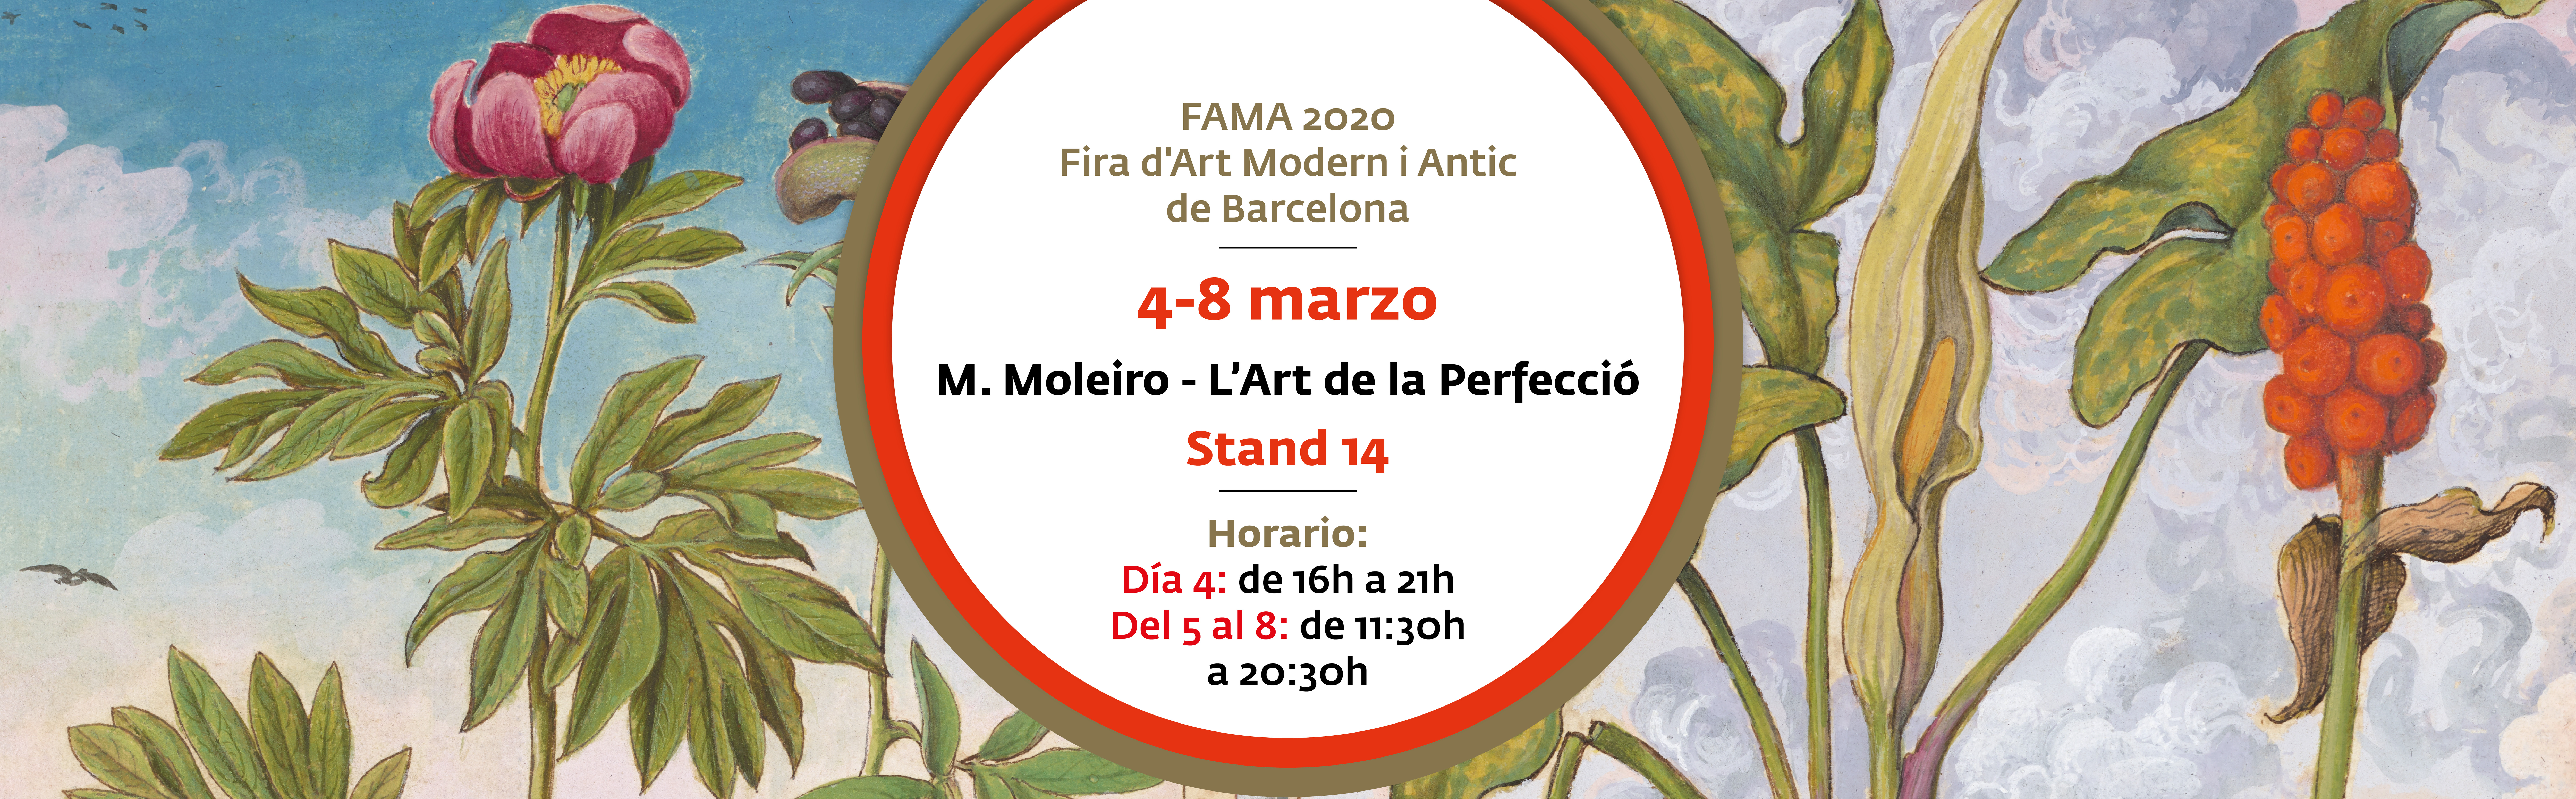 FAMA FIRA D�ART MODERN I ANTIC DE BARCELONA header 1